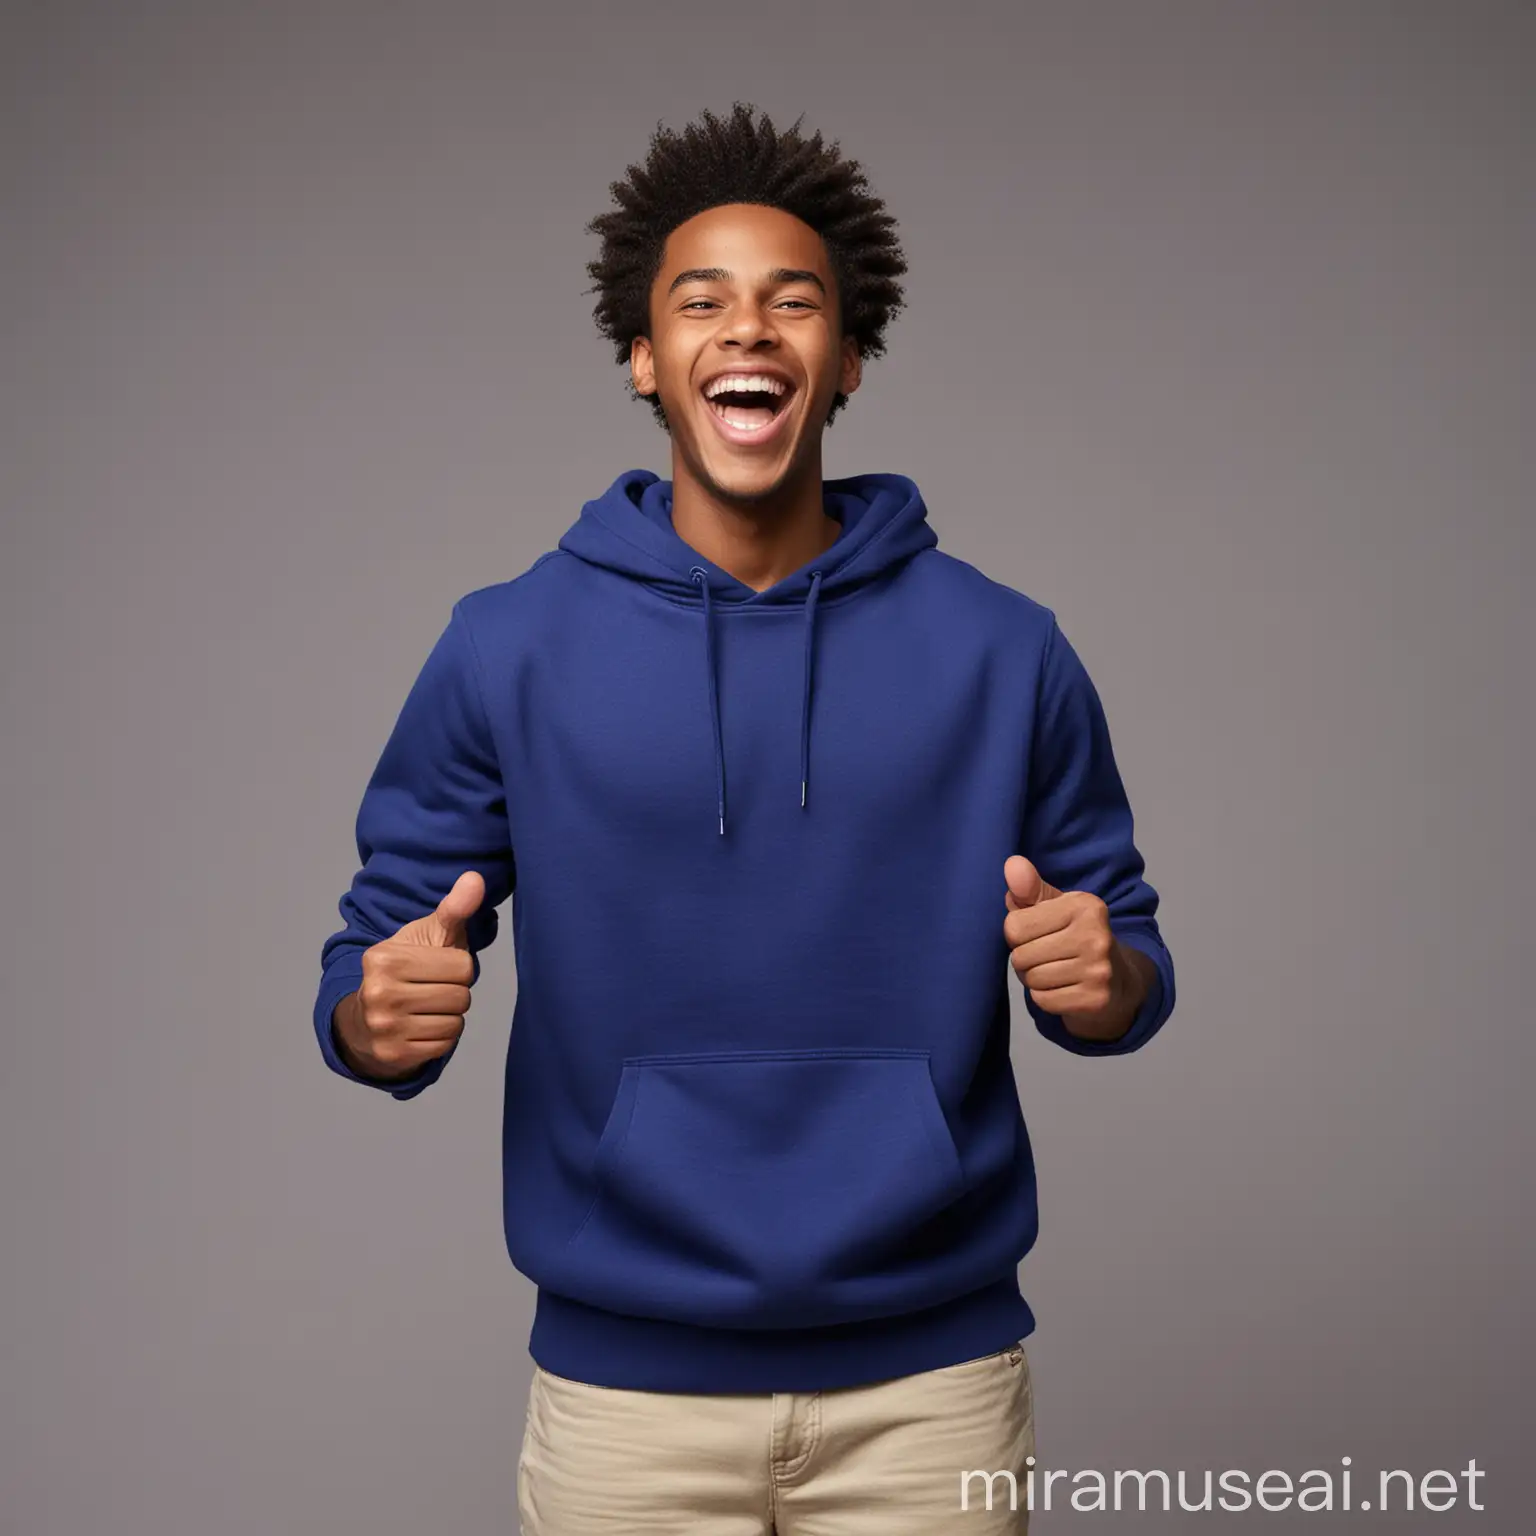 Joyful African American Man in Royal Blue Sweatshirt Celebrating Lottery Win